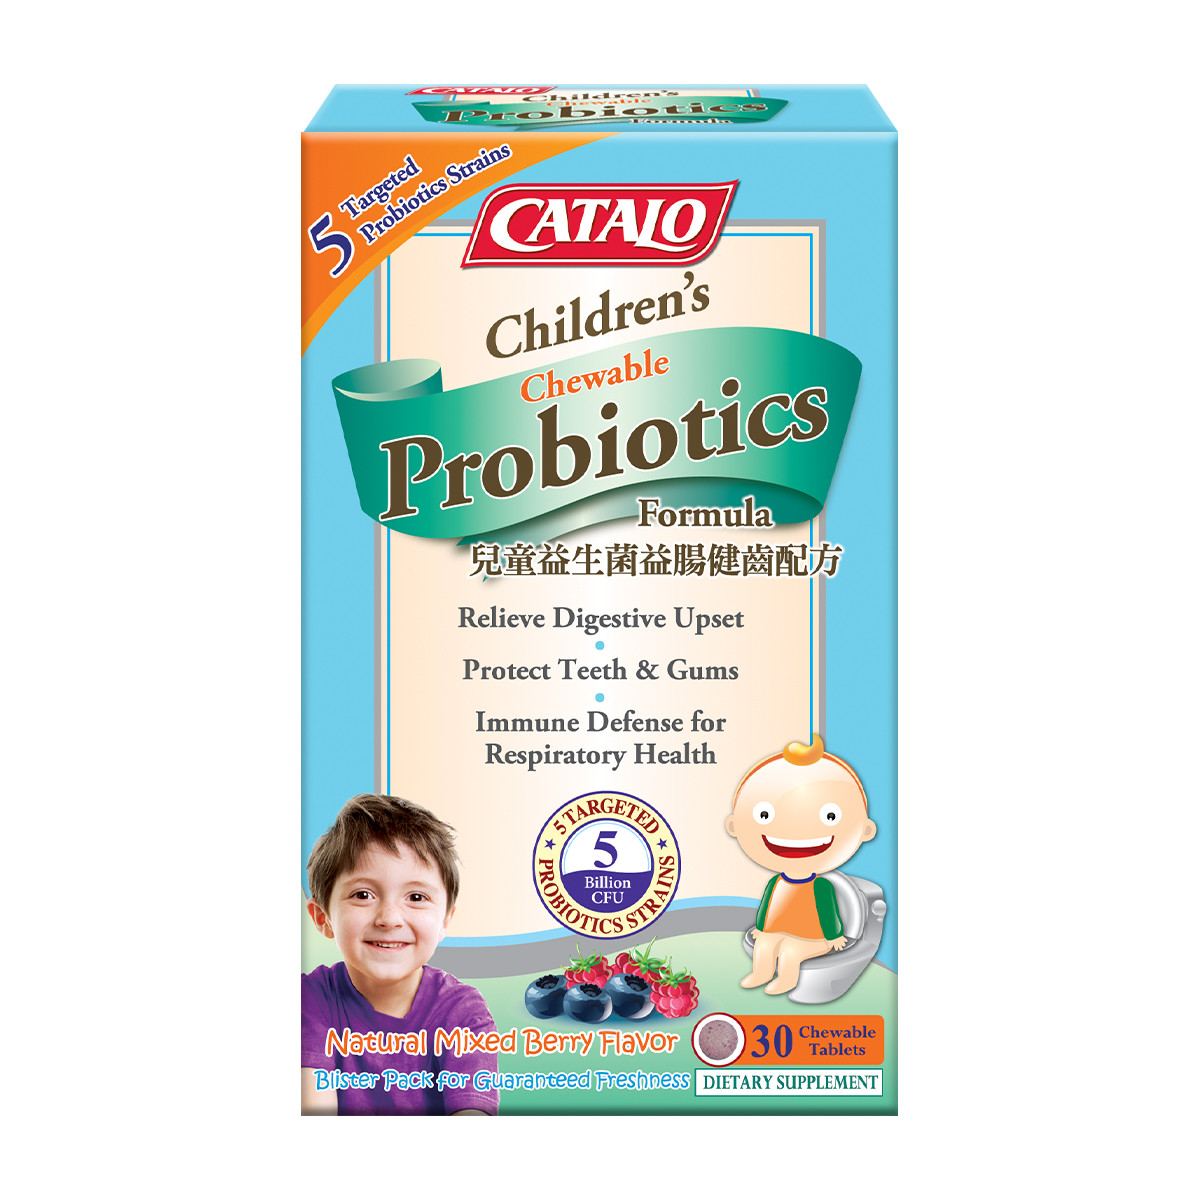 Children’s Probiotics Chewable Formula 30 Chewable Tablets